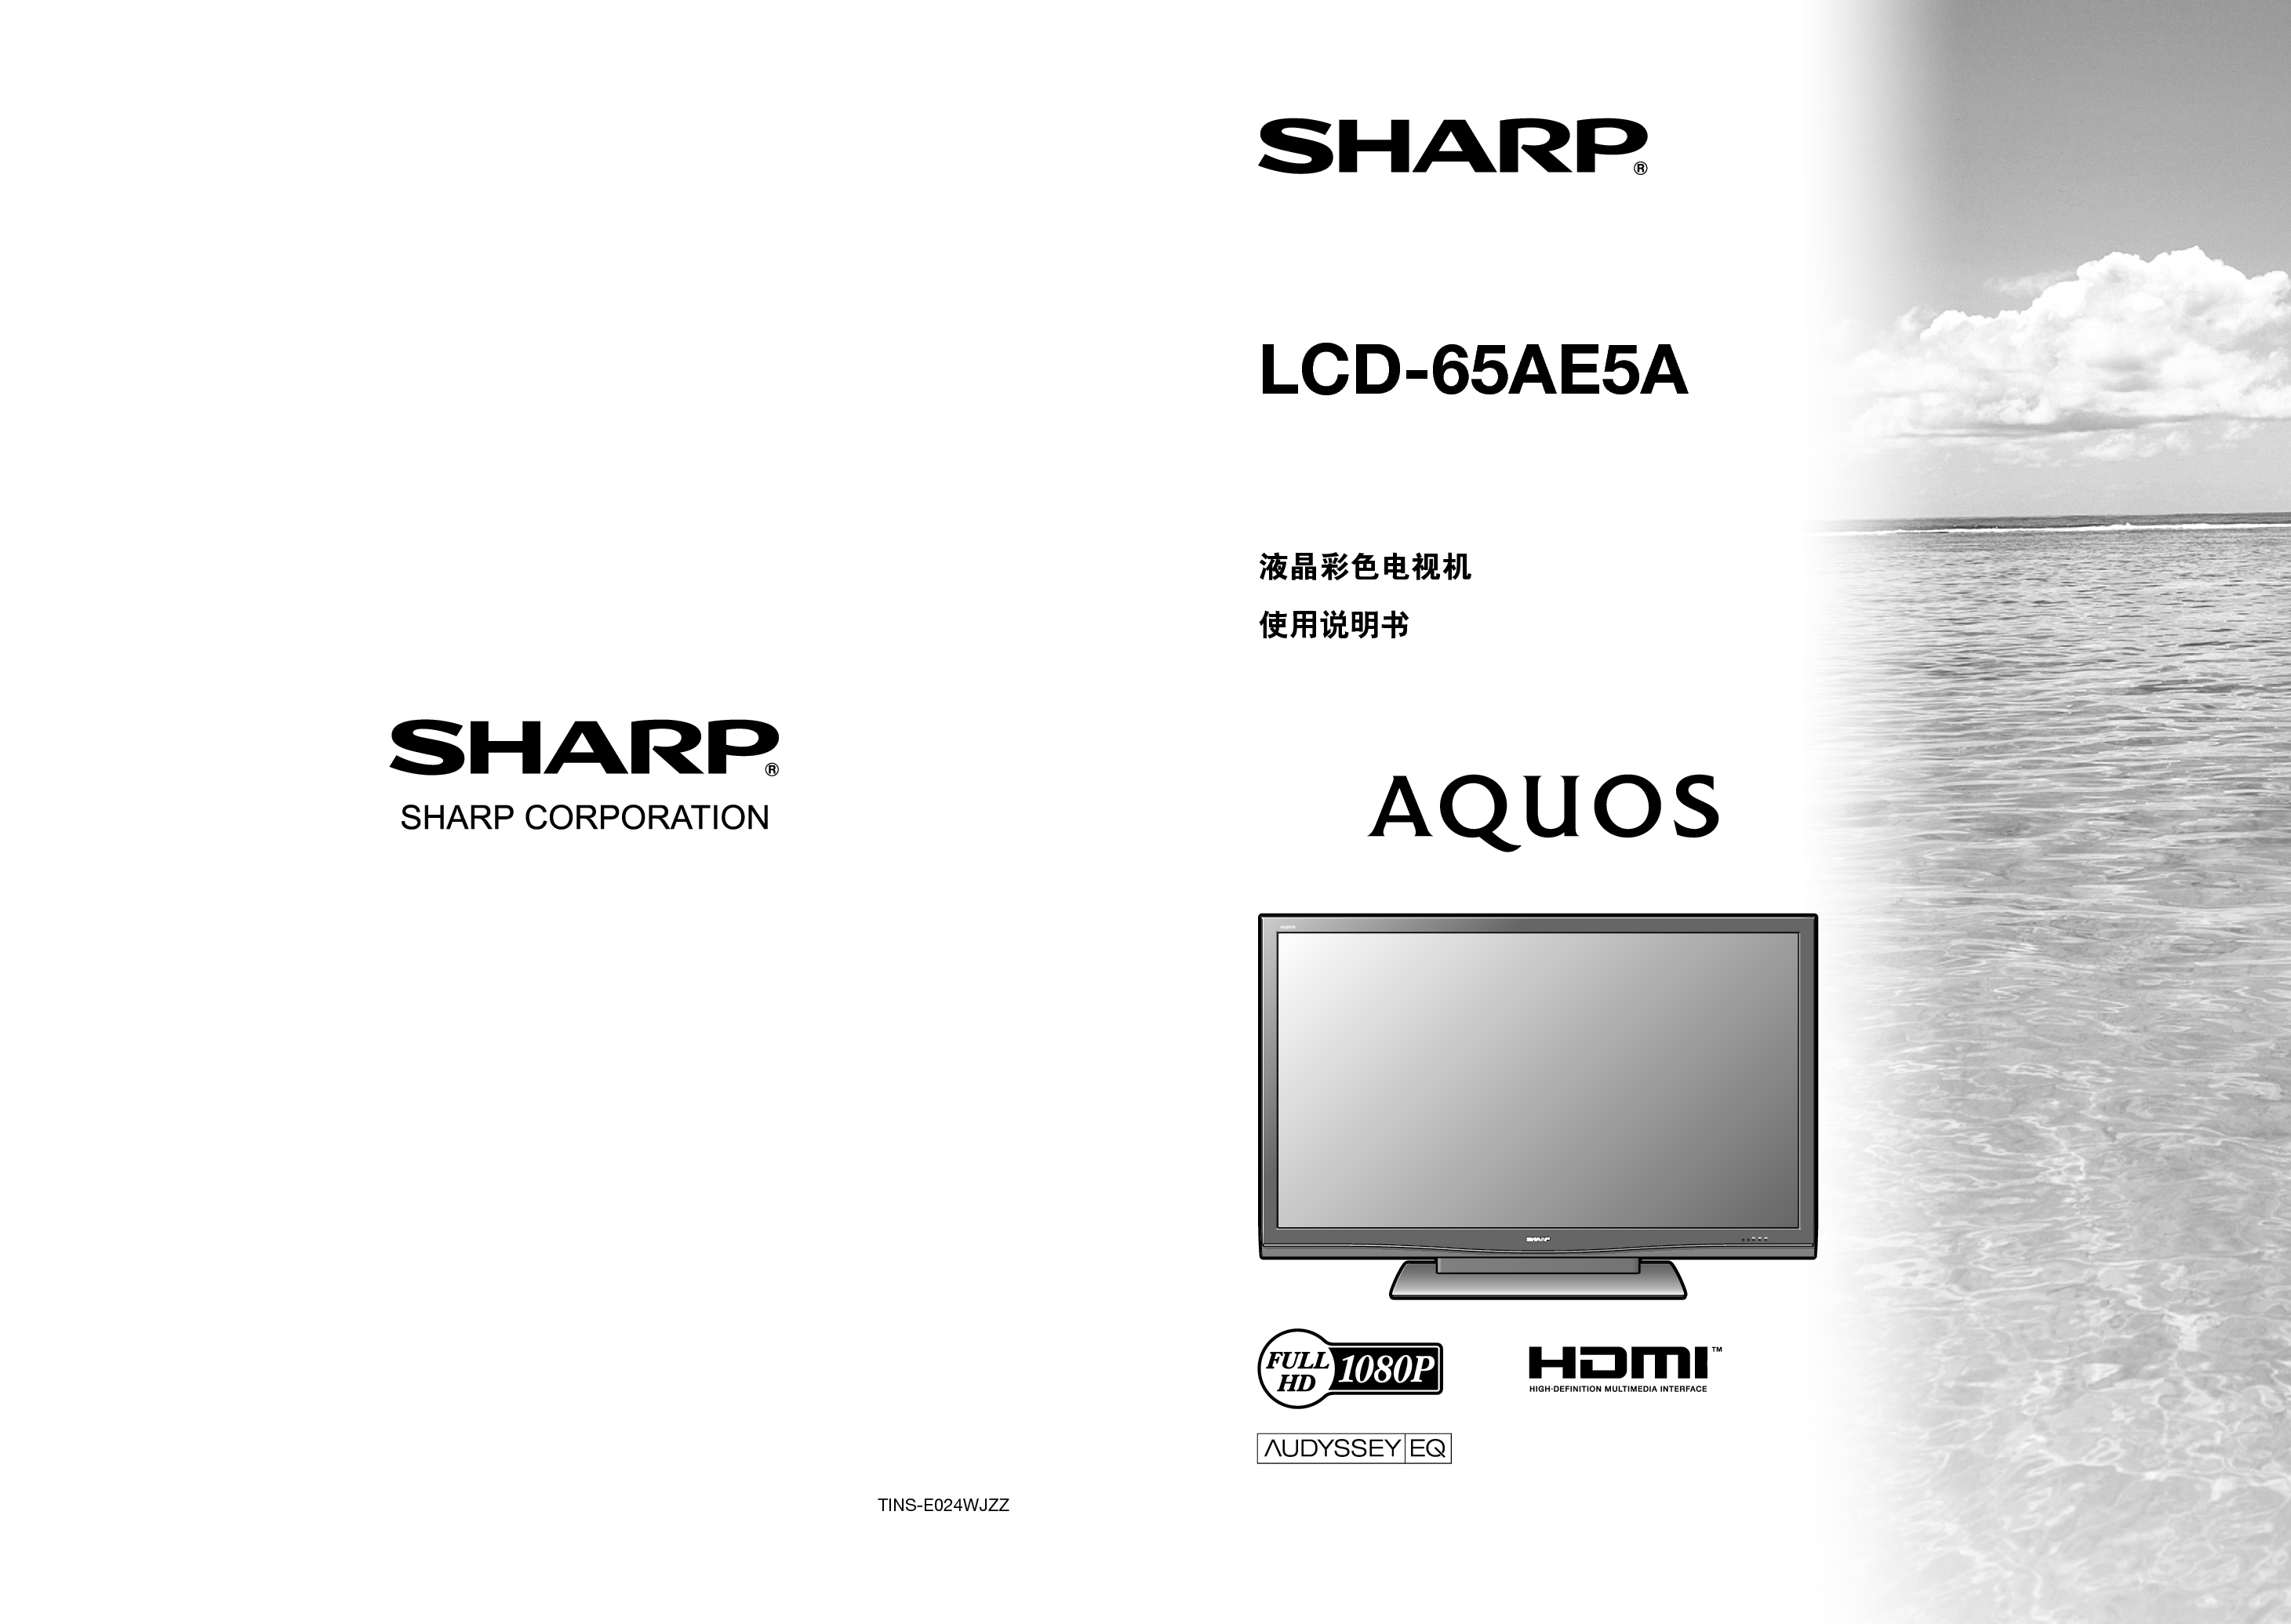 夏普 Sharp LCD-65AE5A 说明书 封面